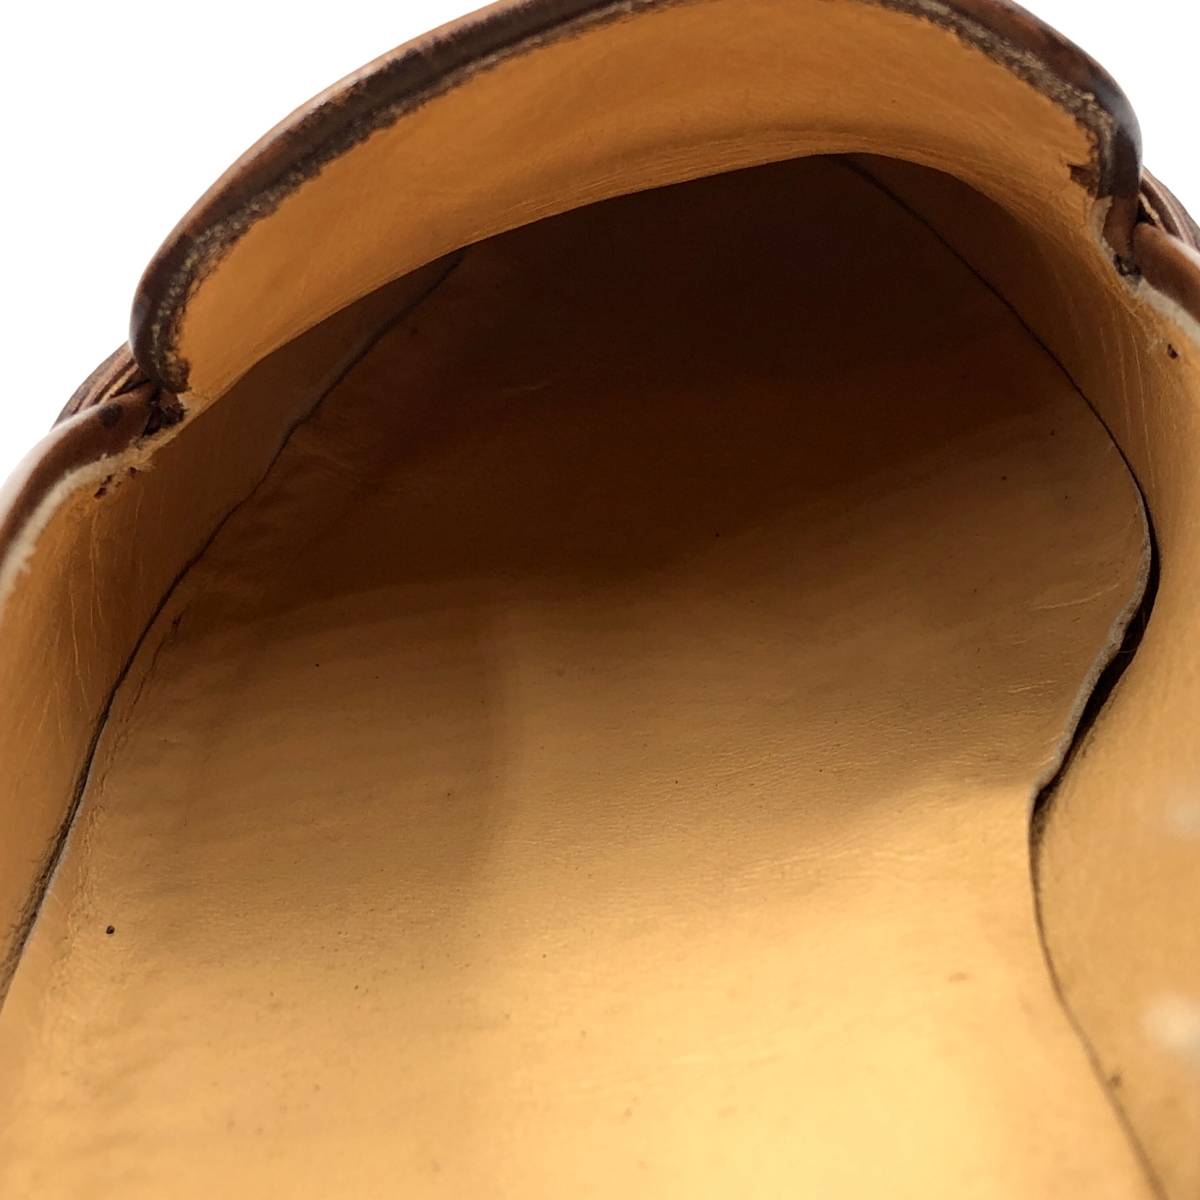 即決 SALVATORE FERRAGAMO フェラガモ 26m 8EEE メンズ レザーシューズ ビットローファー 茶 ブラウン 革靴 皮靴 ビジネスシューズ_画像9